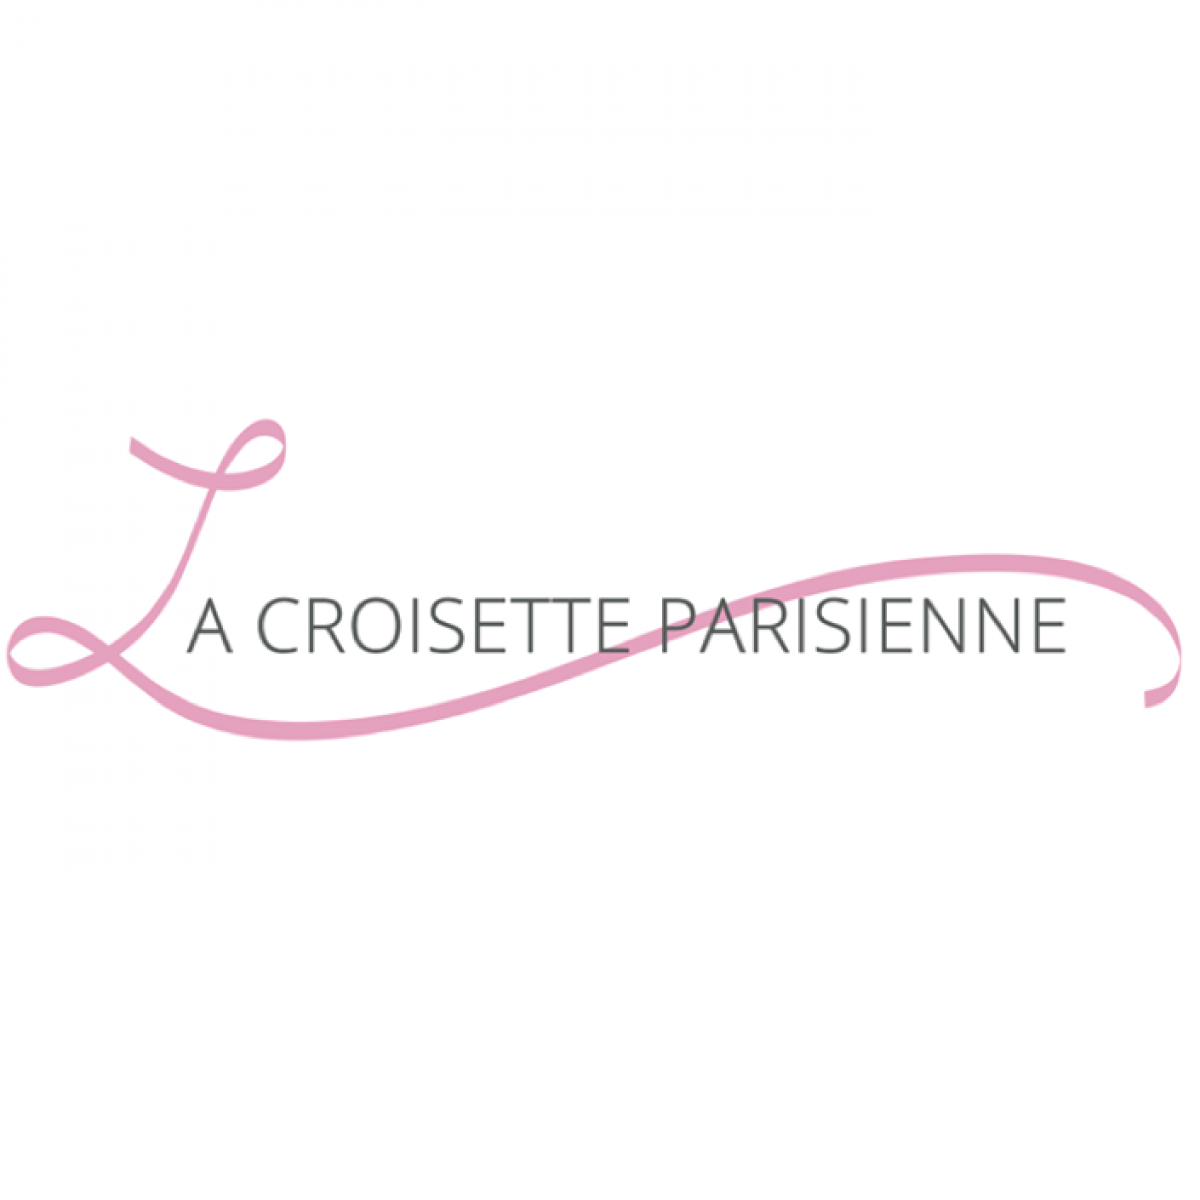 La Croisette Parisienne